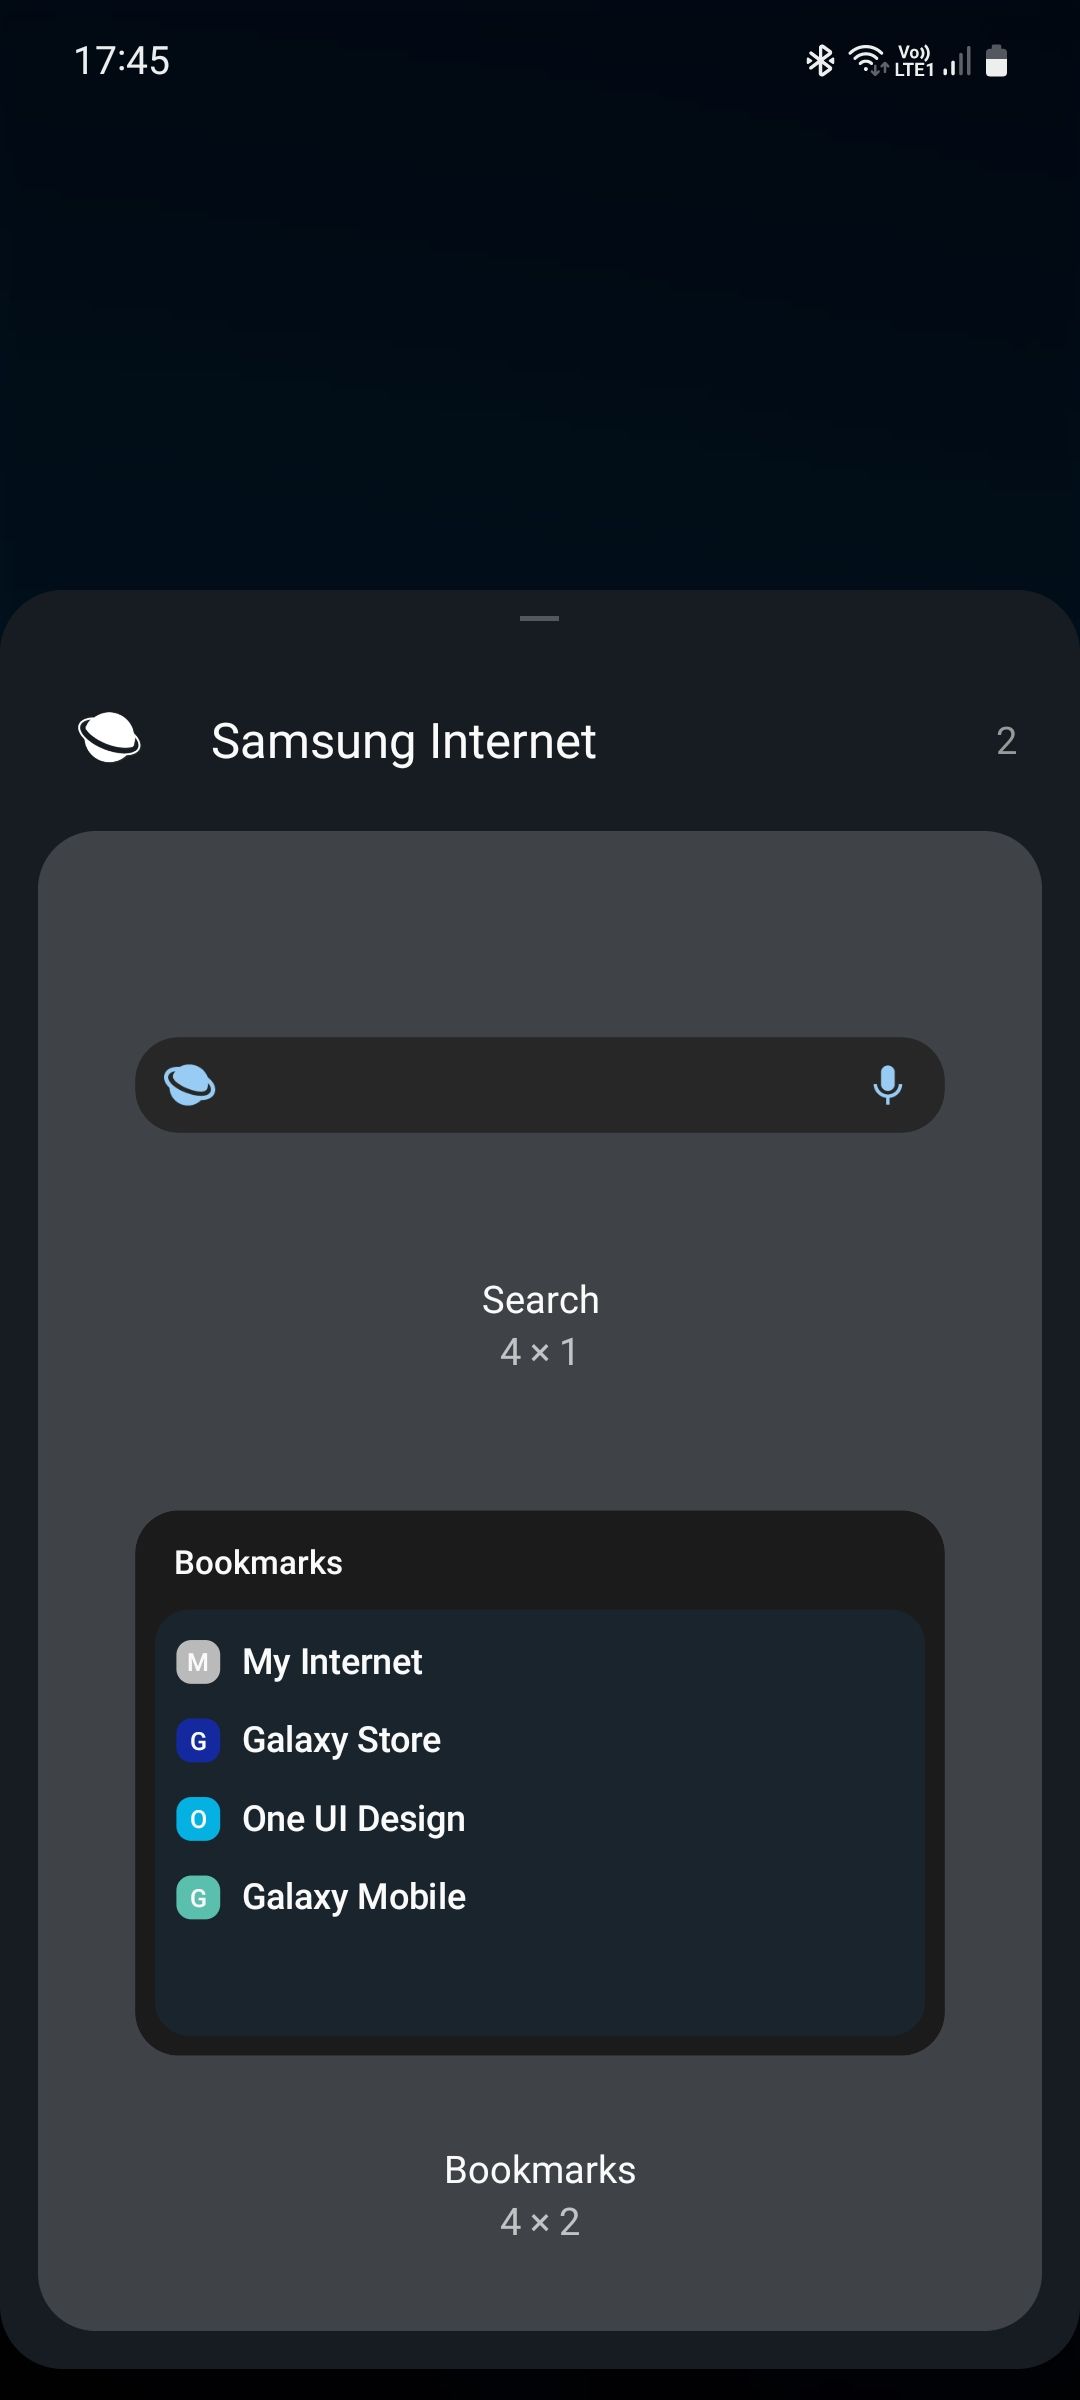 Samsung Internet widgets